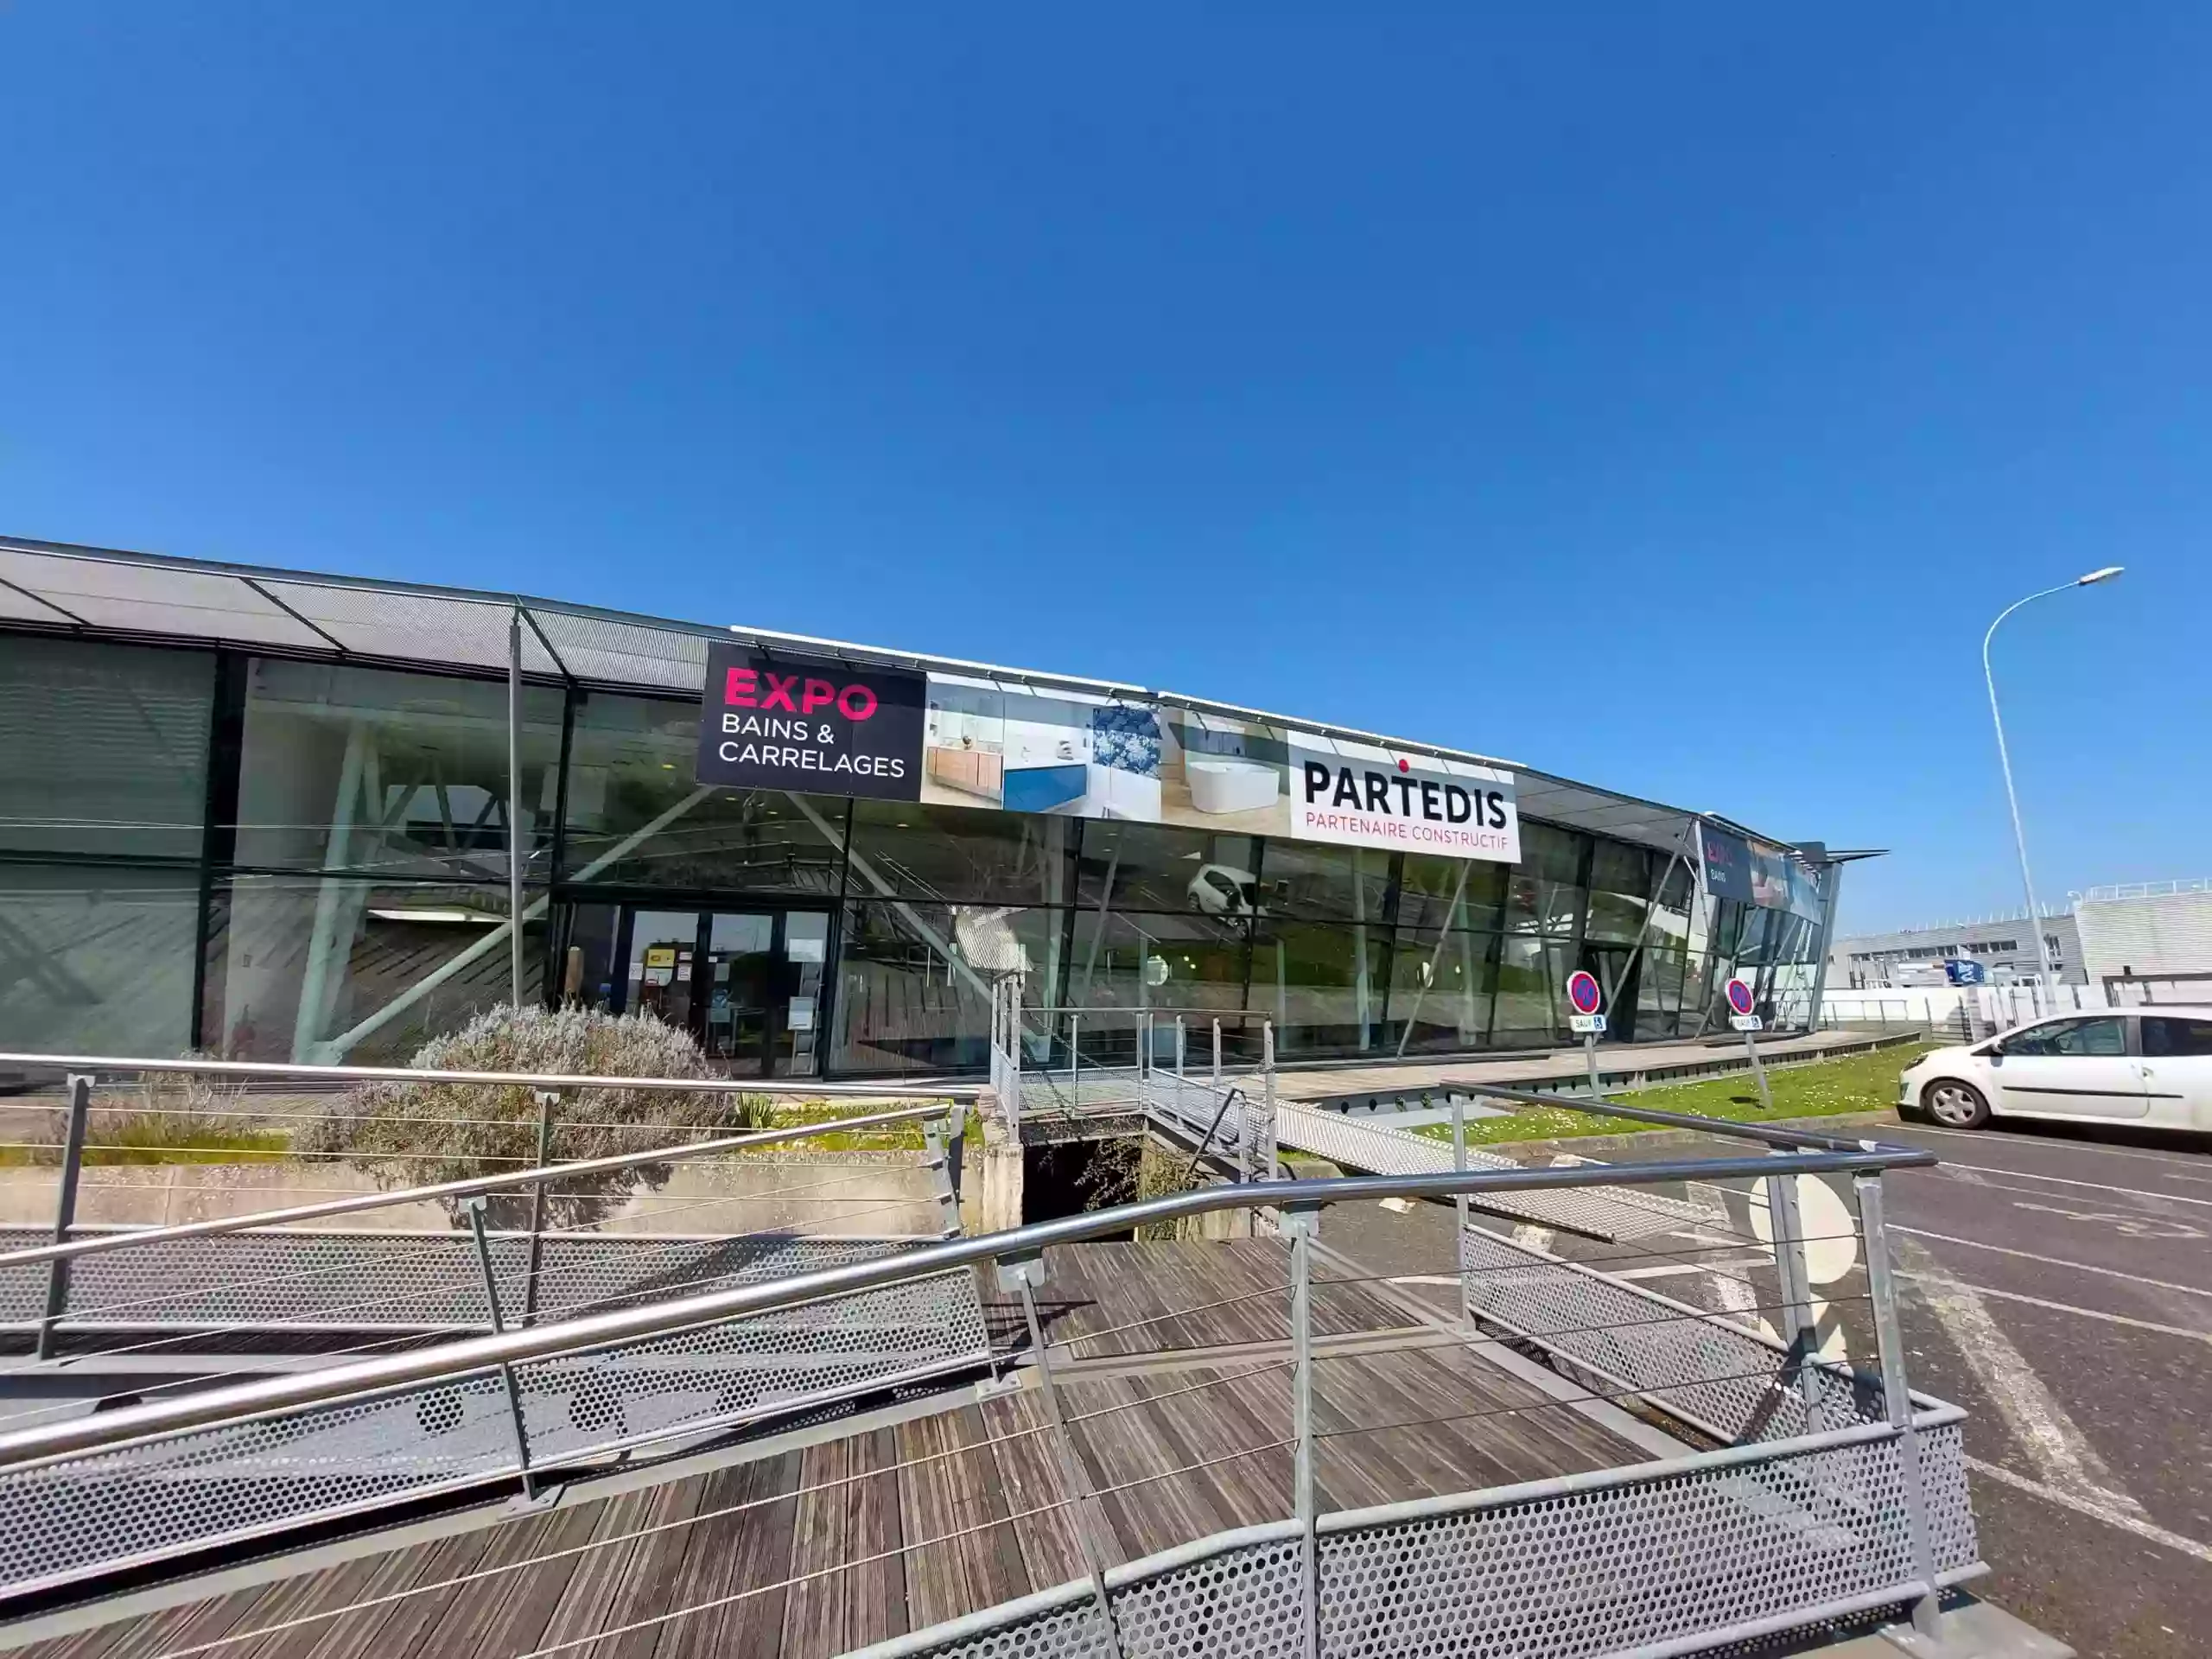 PARTEDIS Expo Bains & Carrelages - Langueux